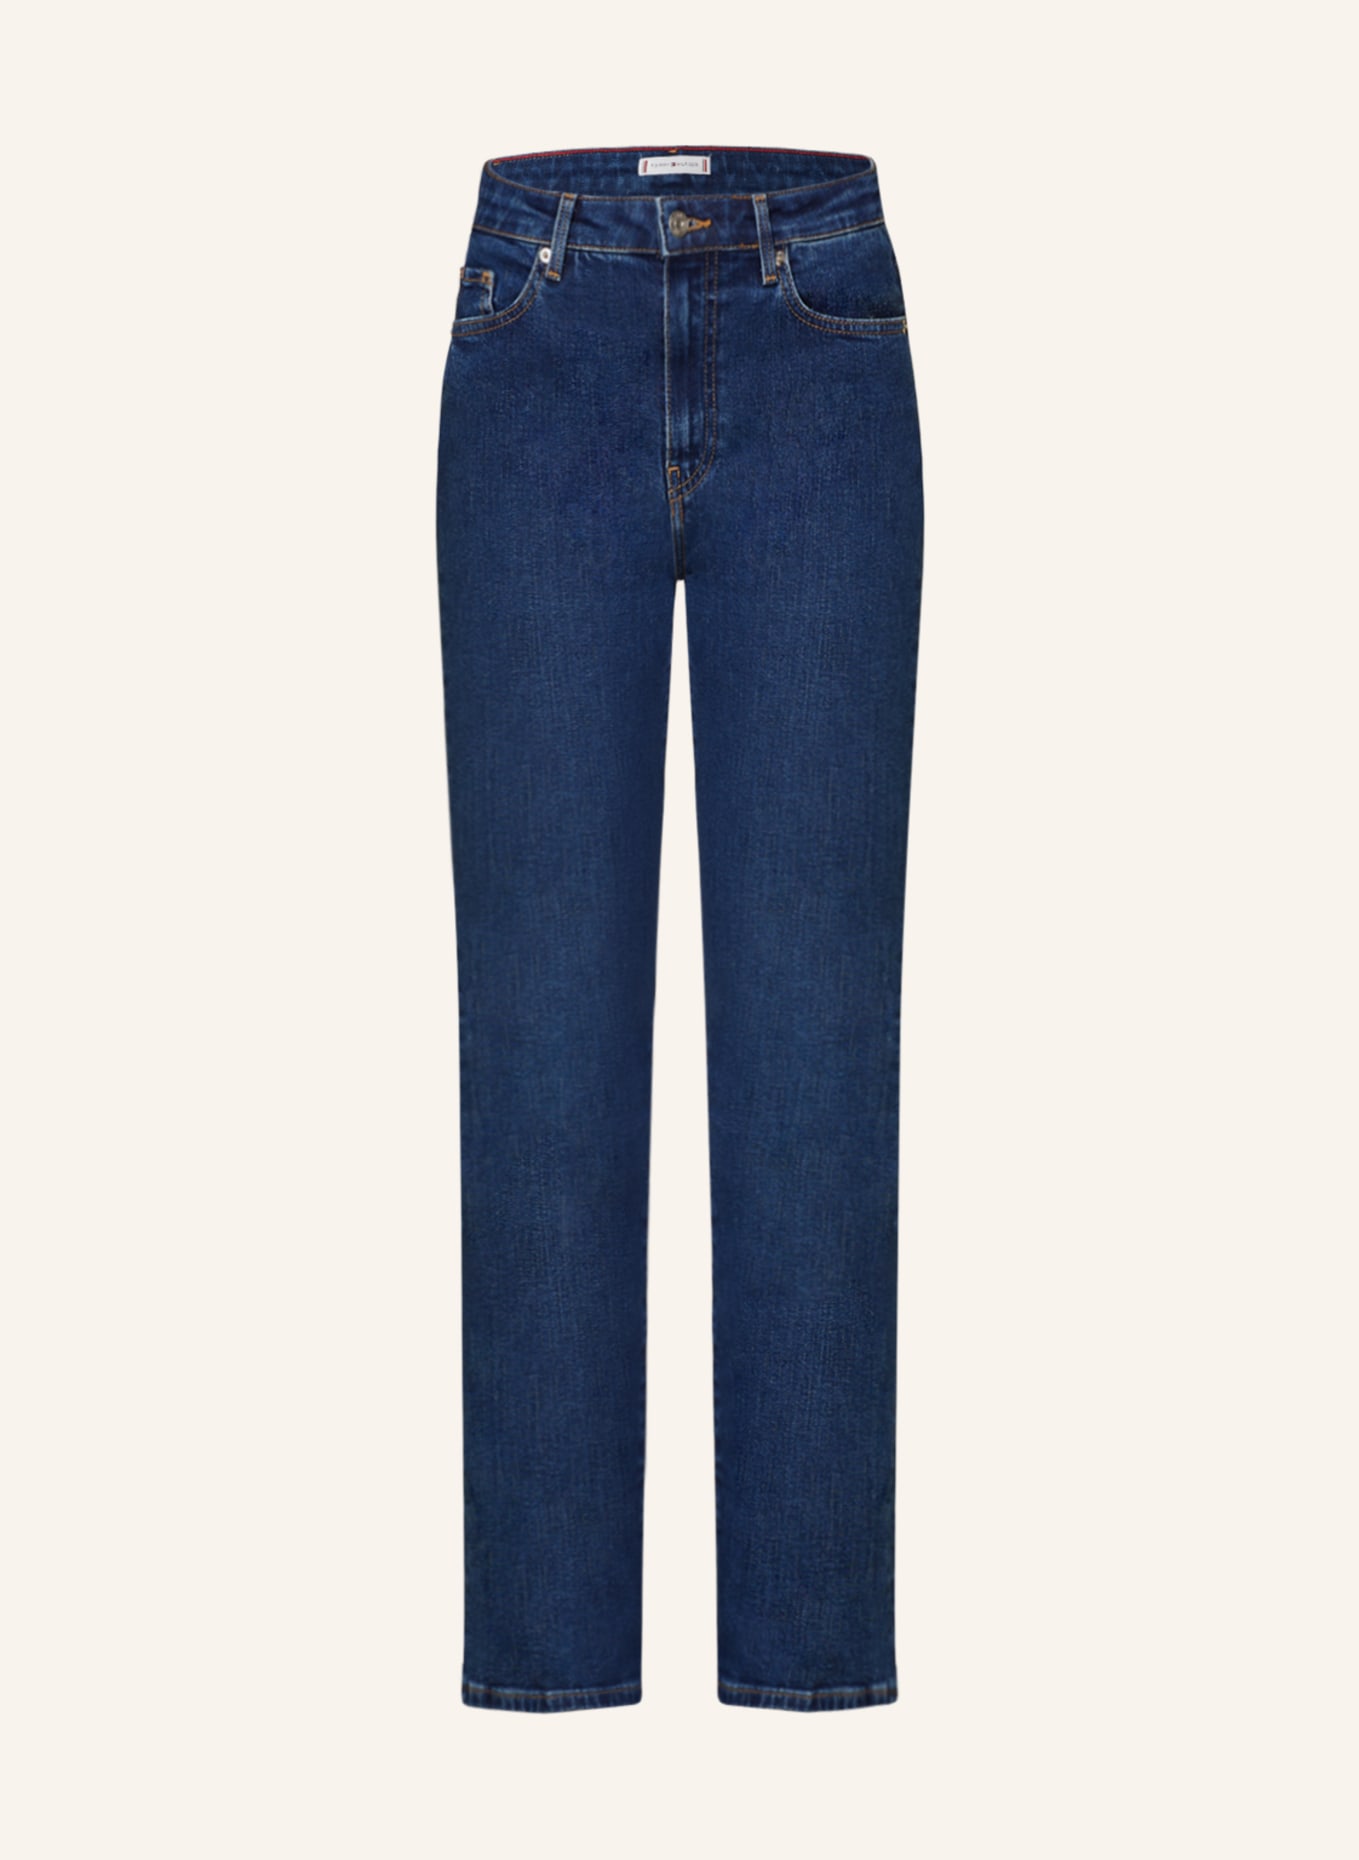 TOMMY HILFIGER Bootcut jeans, Color: 1A4 Kai (Image 1)